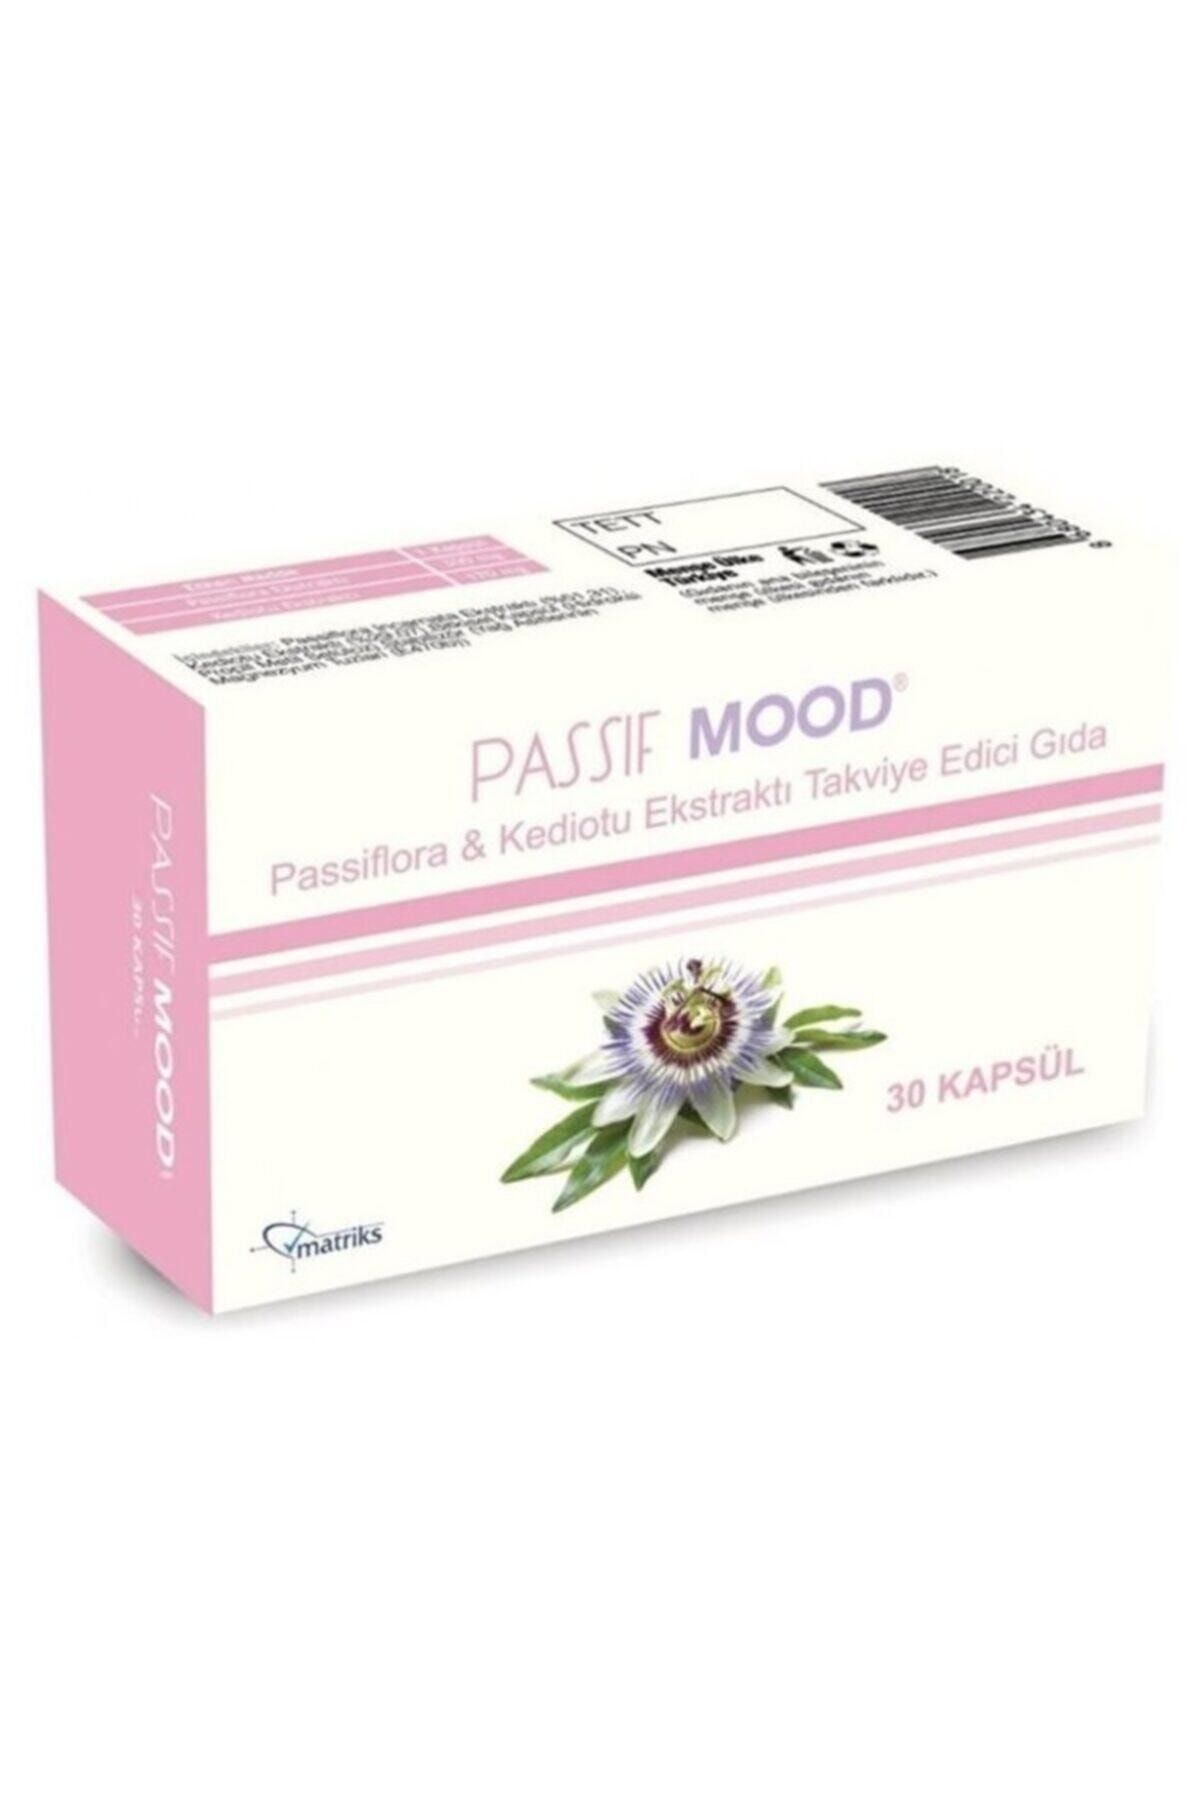 Matriks Passif Mood Passiflora Ekstraktı ( Uyku Düzenleyici) Takviye Edici Gıda 30 Kapsül